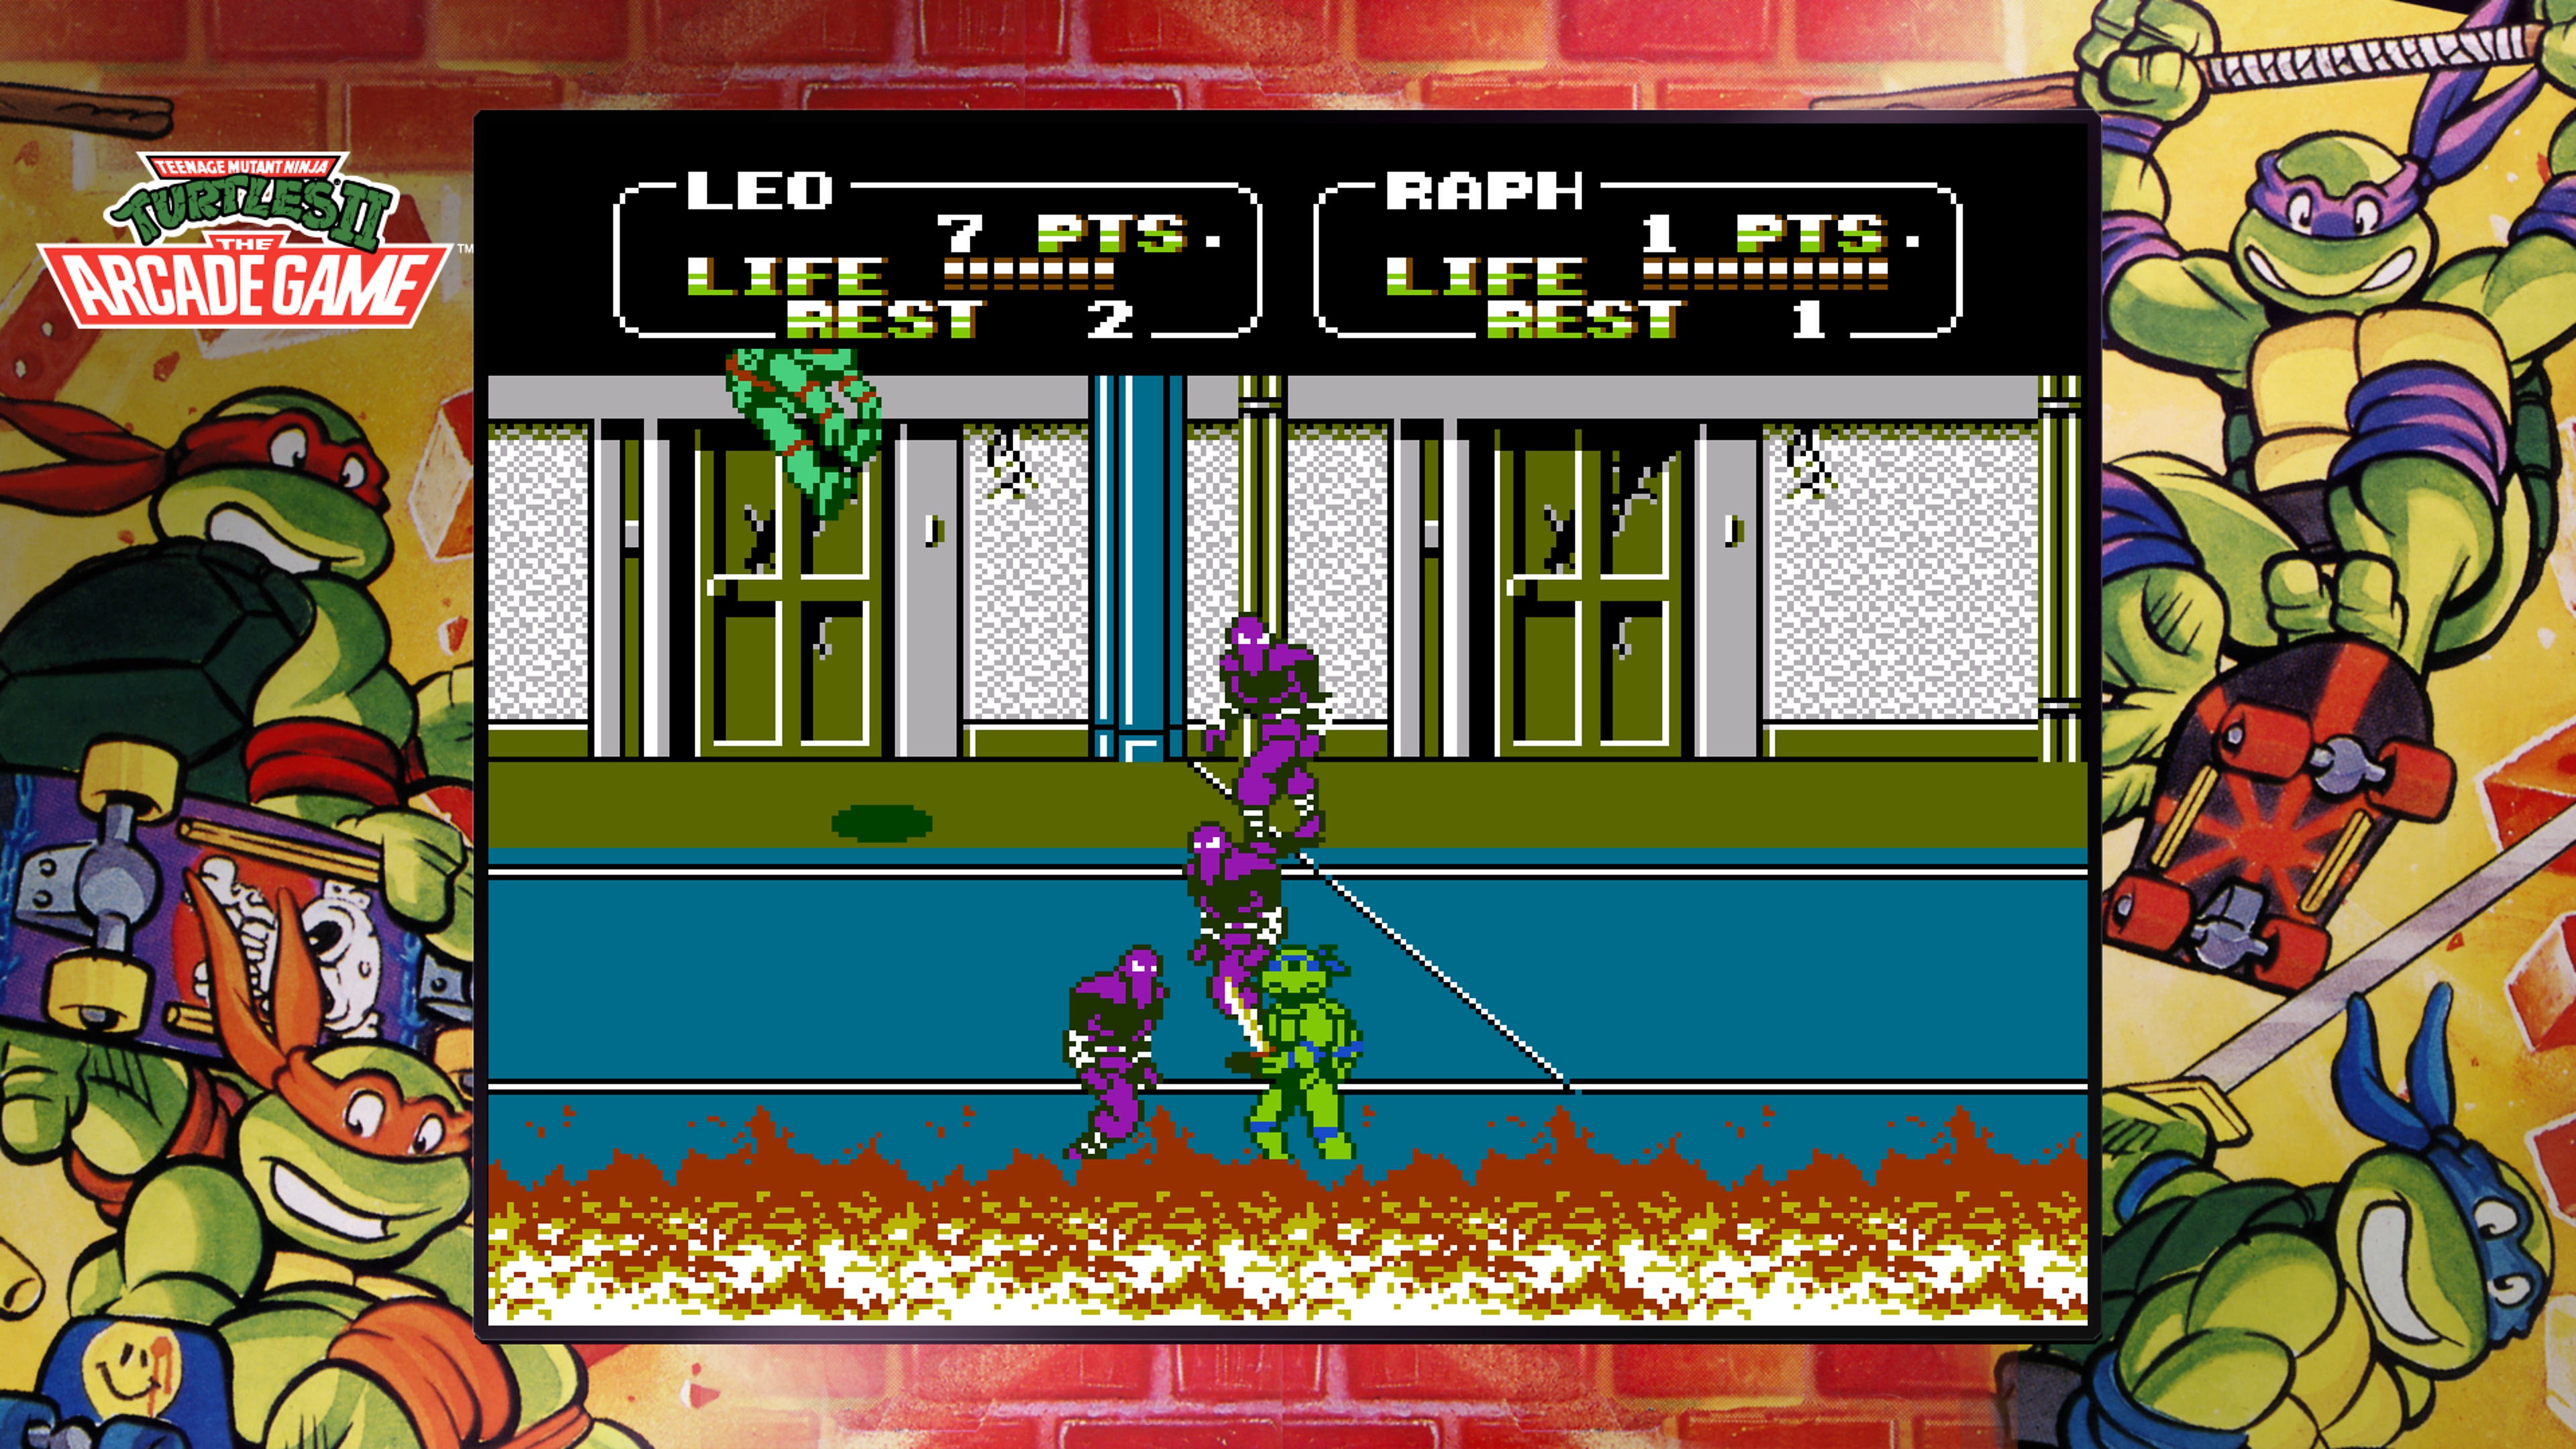 Captura de pantalla de Teenage Mutant Ninja Turtles Collection - The Arcade Game en la que Leonardo pelea contra el Clan del Pie